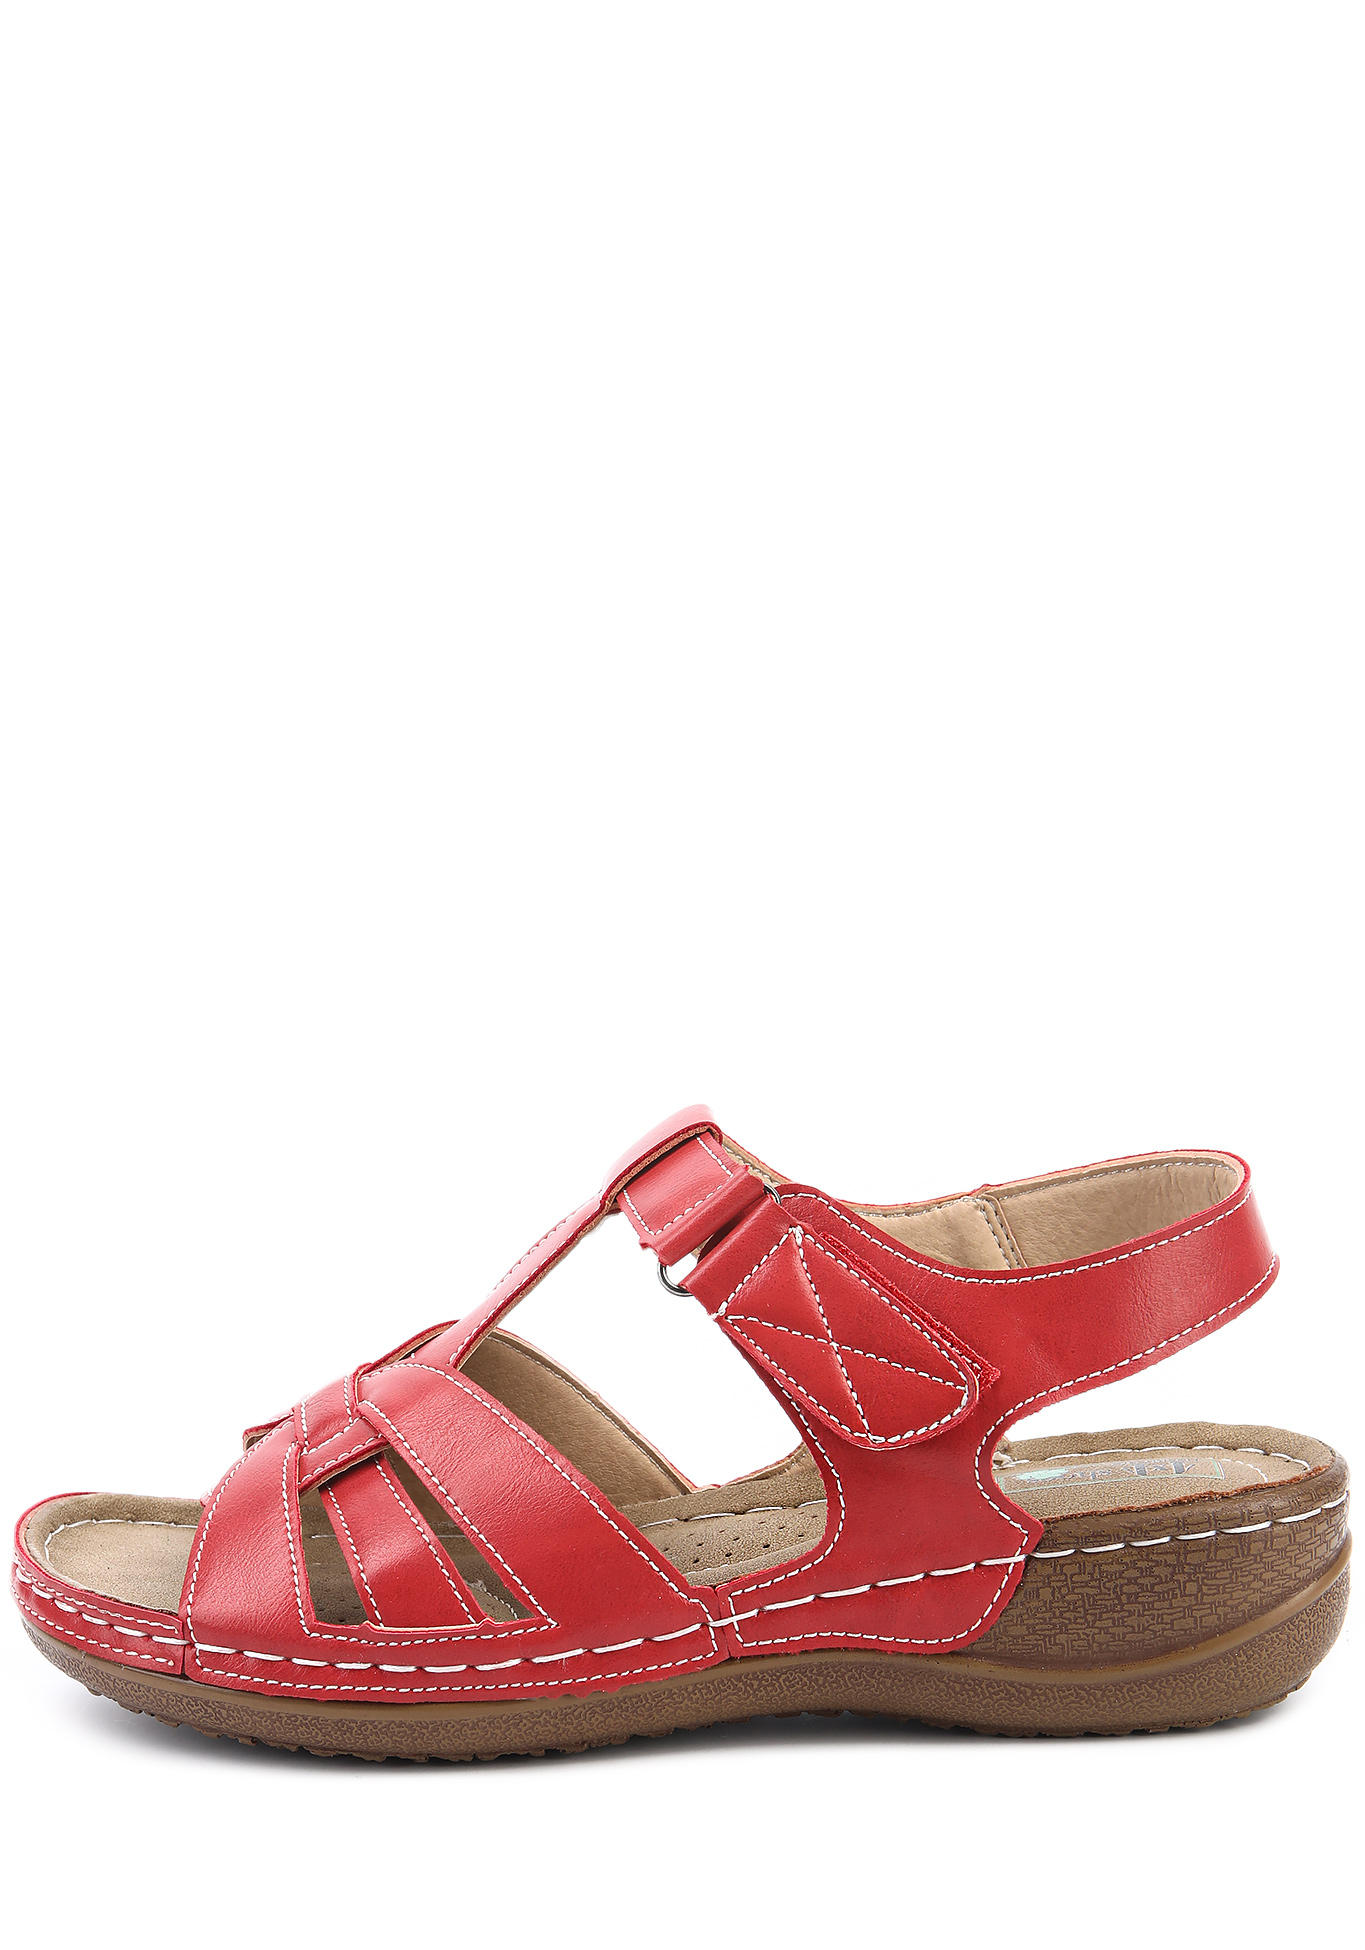 Босоножки женские "Фирсис" 4x4 shoes, размер 37, цвет красный - фото 8